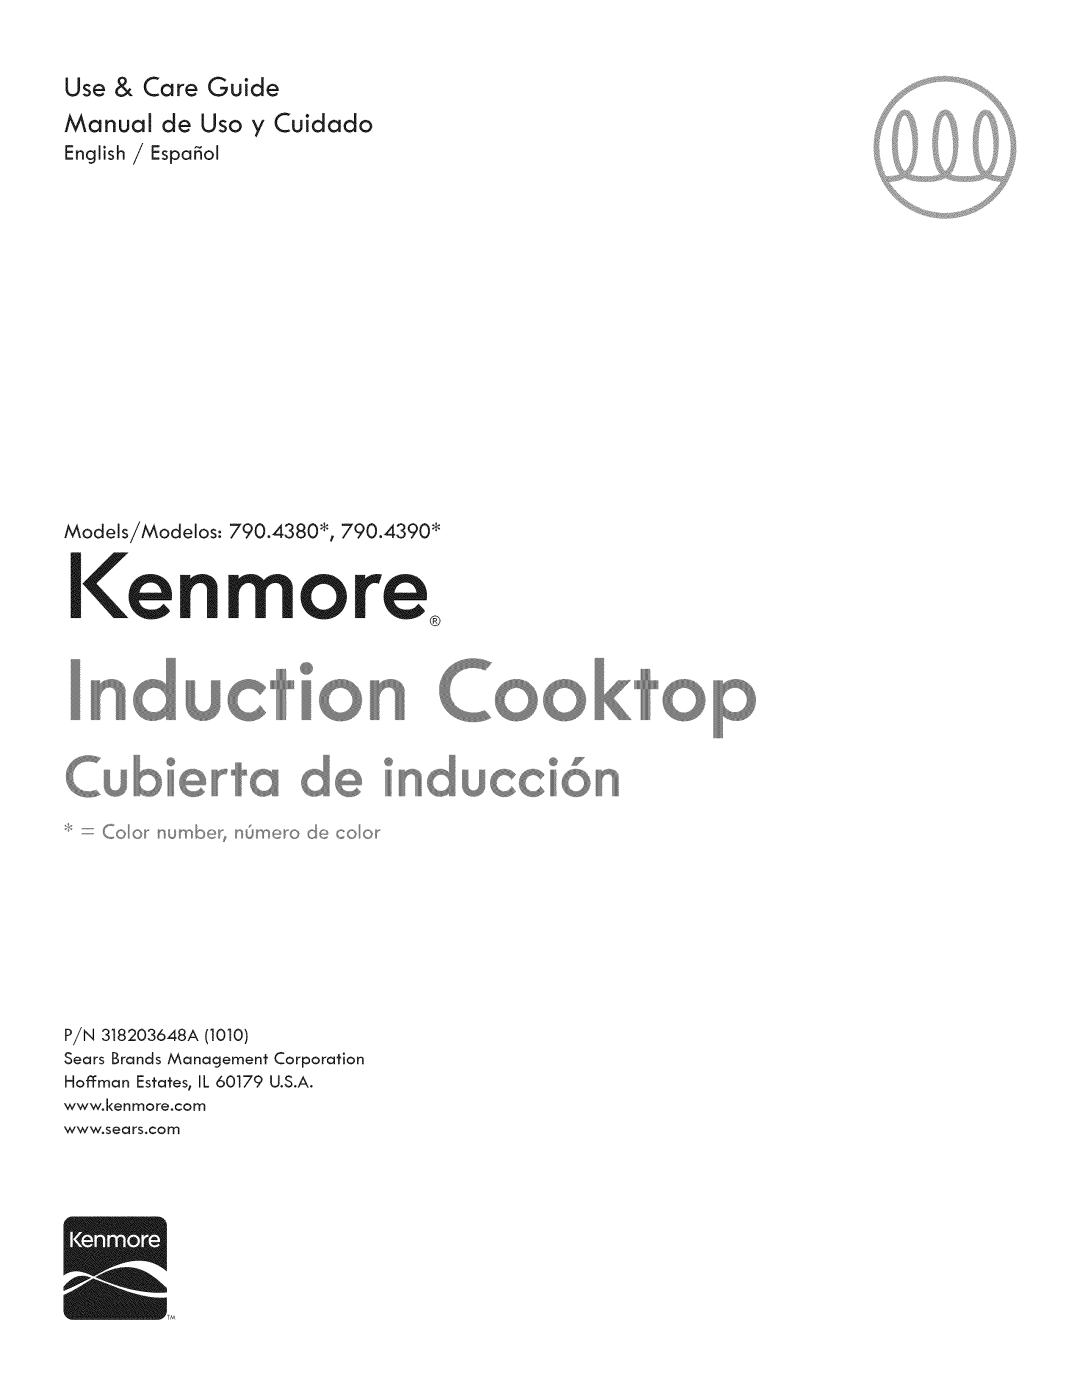 Kenmore 790.4380* manual Use & Care Guide, n ucc@ Y, Manual de Uso y Cuidado 